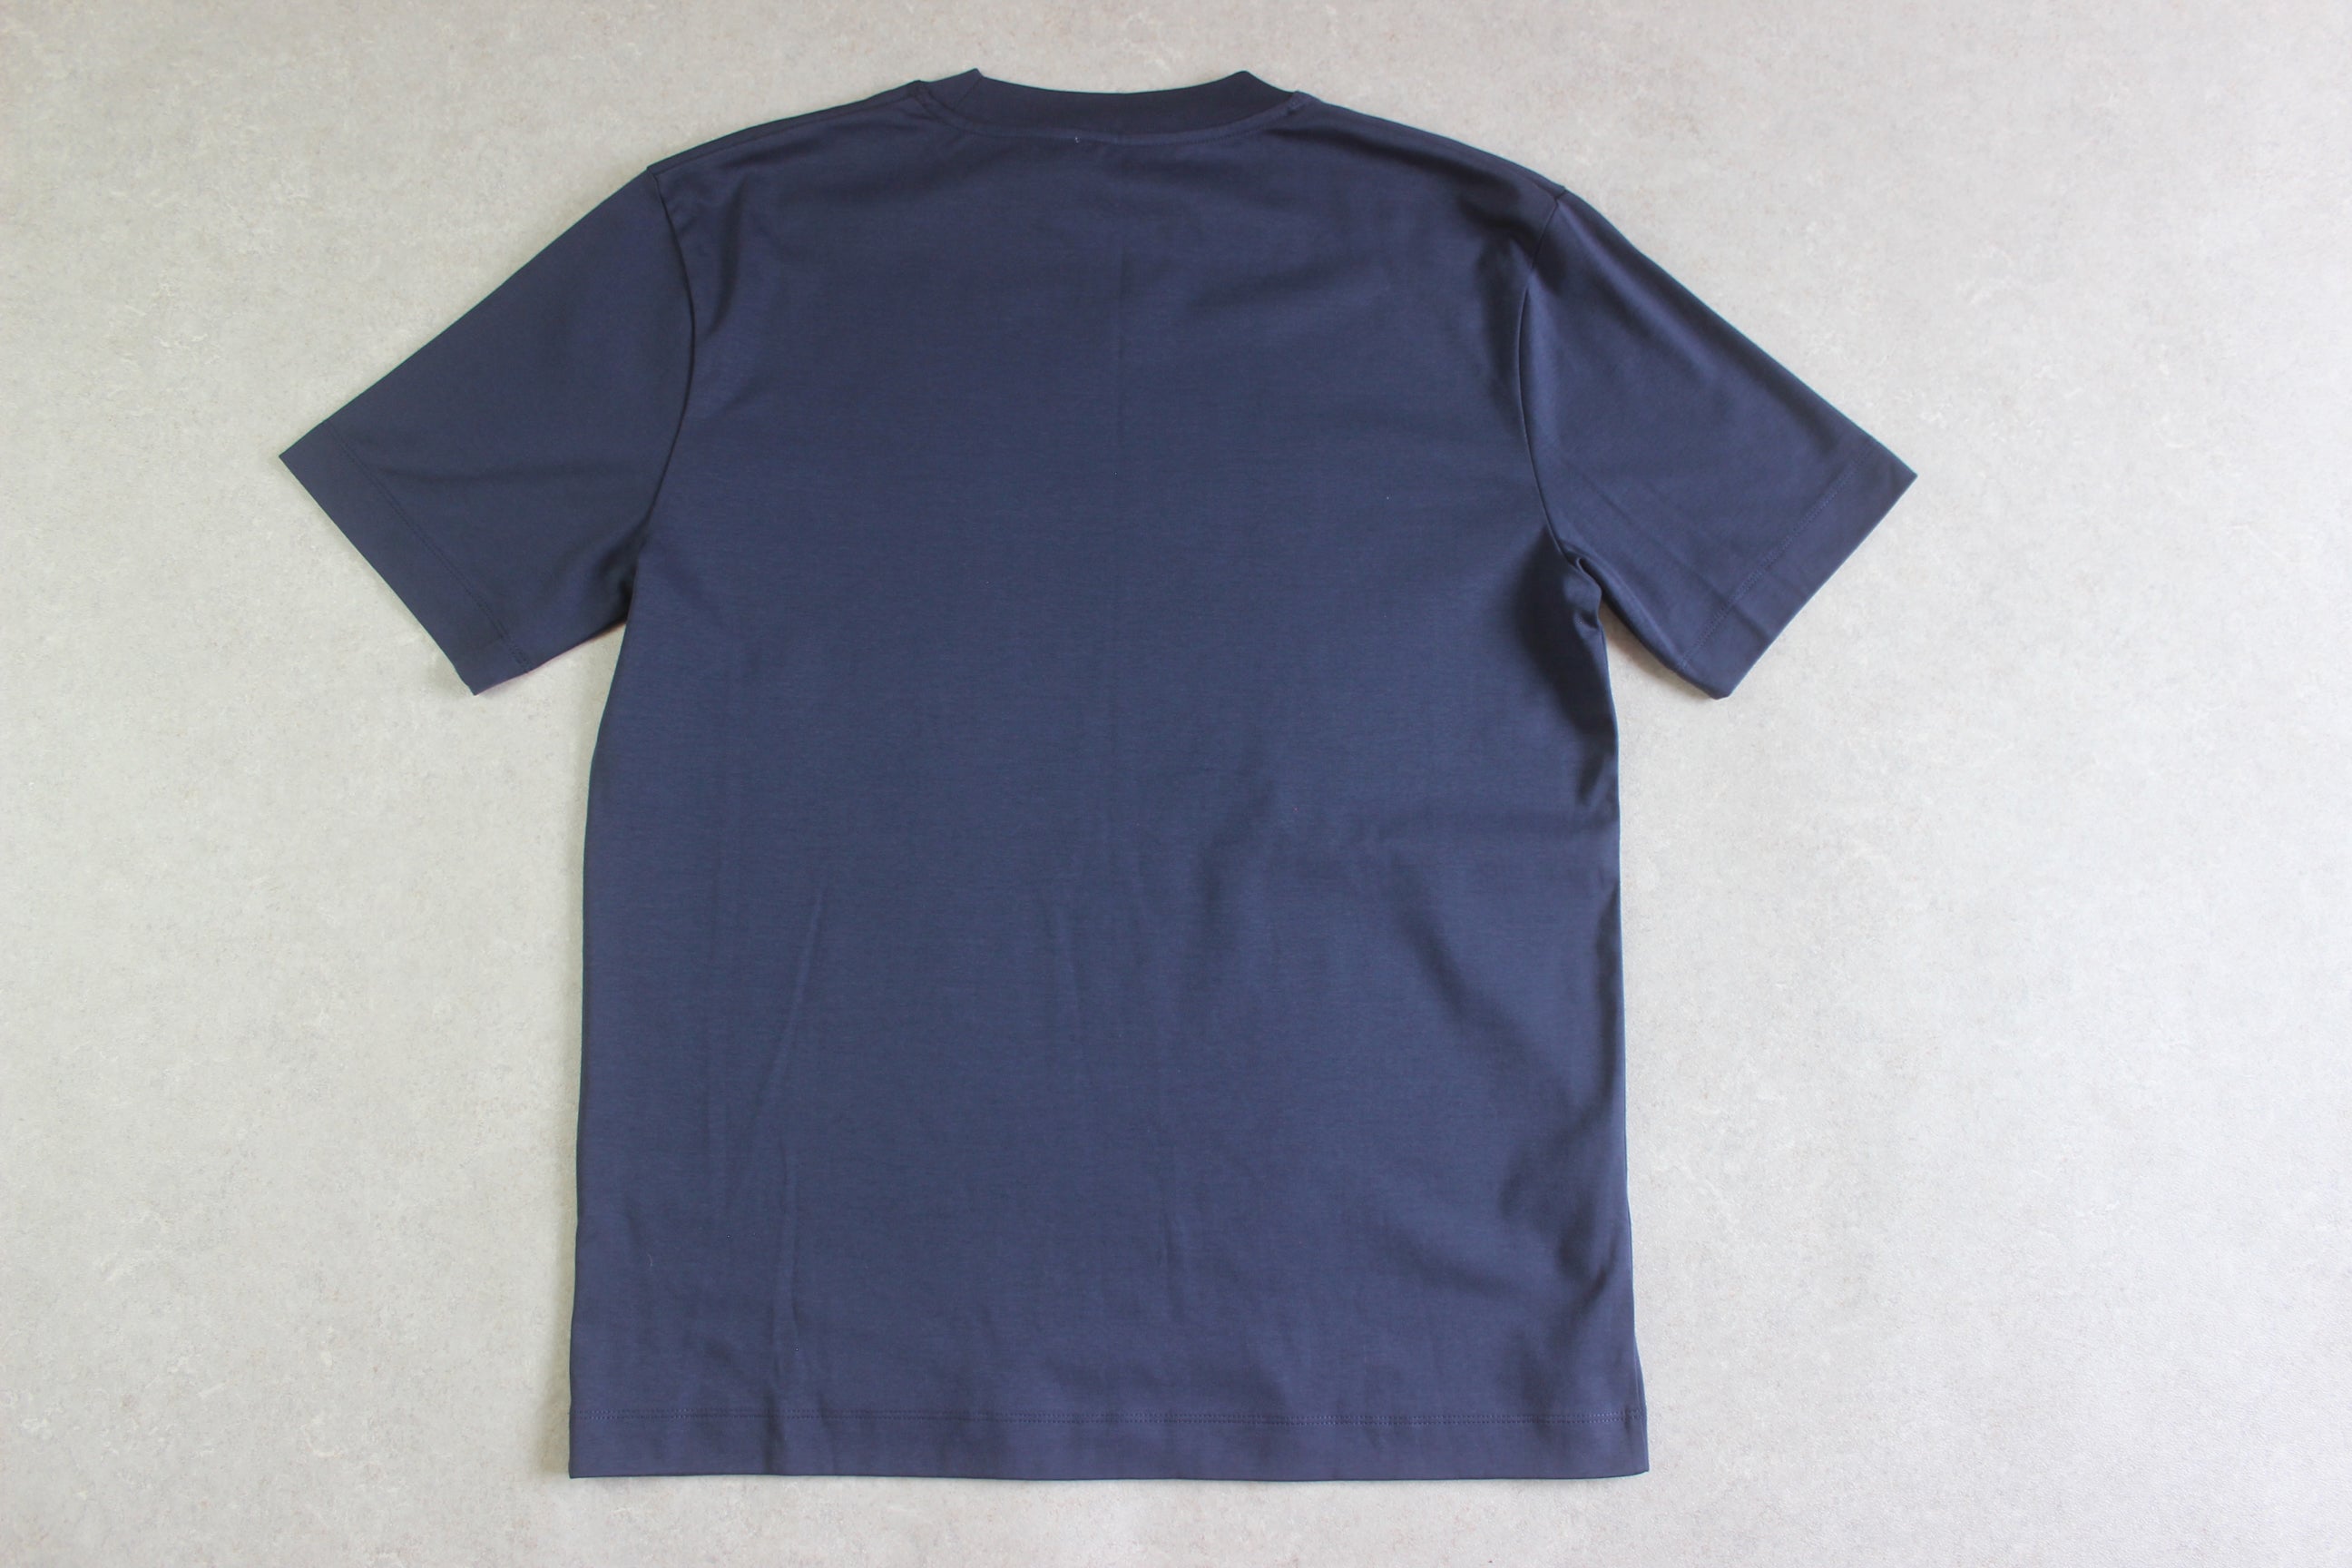 Sunspel - Brand New T Shirt - Navy Blue - Medium